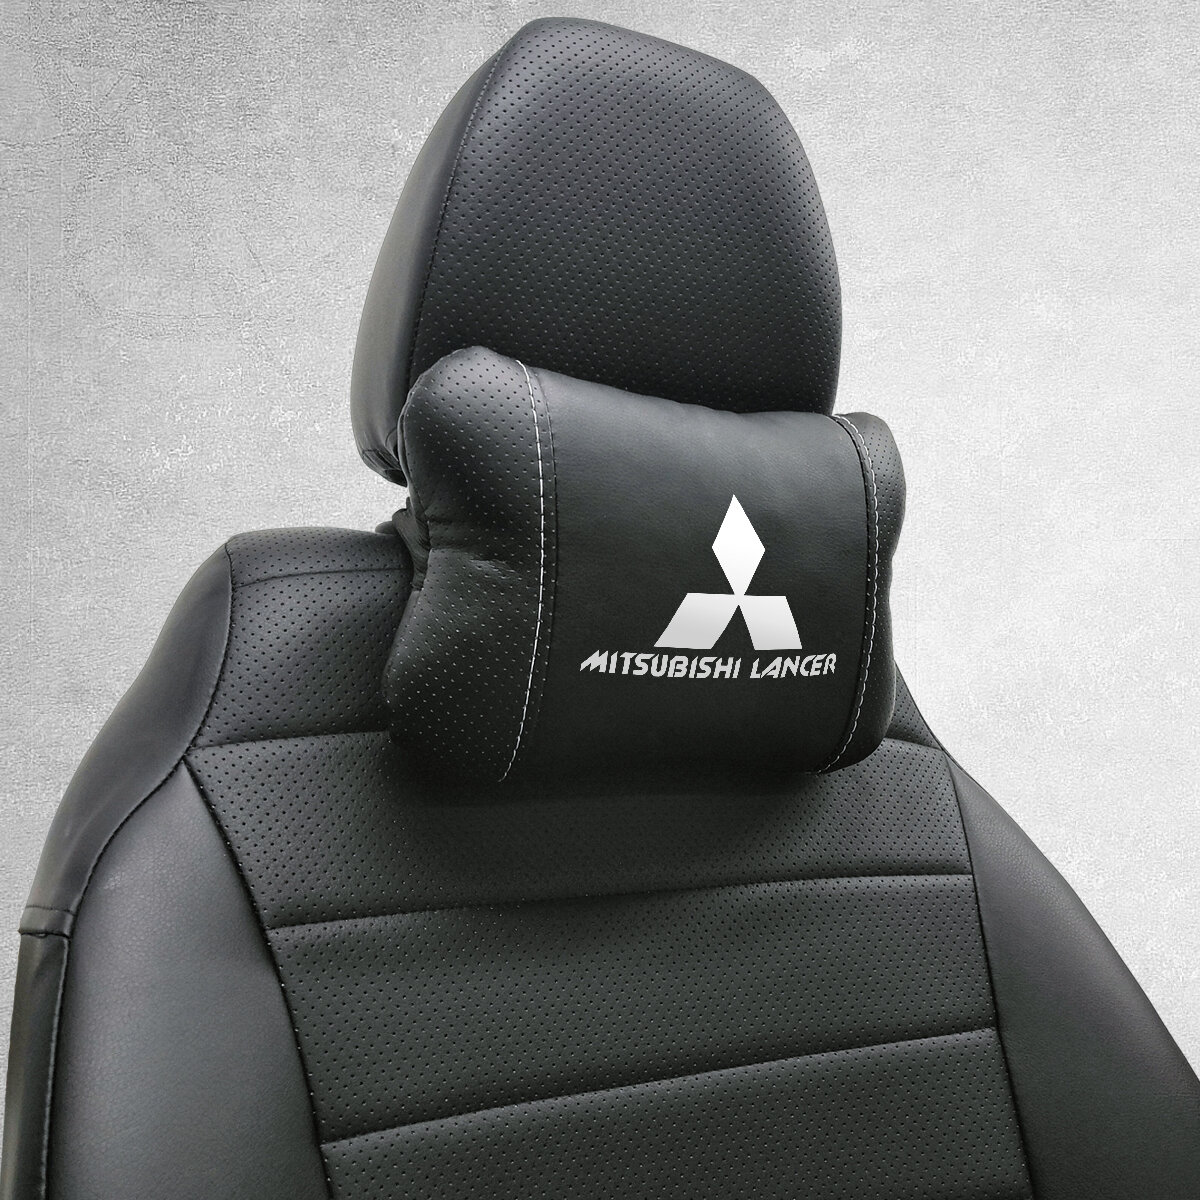 Автомобильная подушка под шею на подголовник эмблема Mitsubishi Lancer для Митсубиси Лансер. Подушка для шеи в машину. Подушка на сиденье автомобиля.